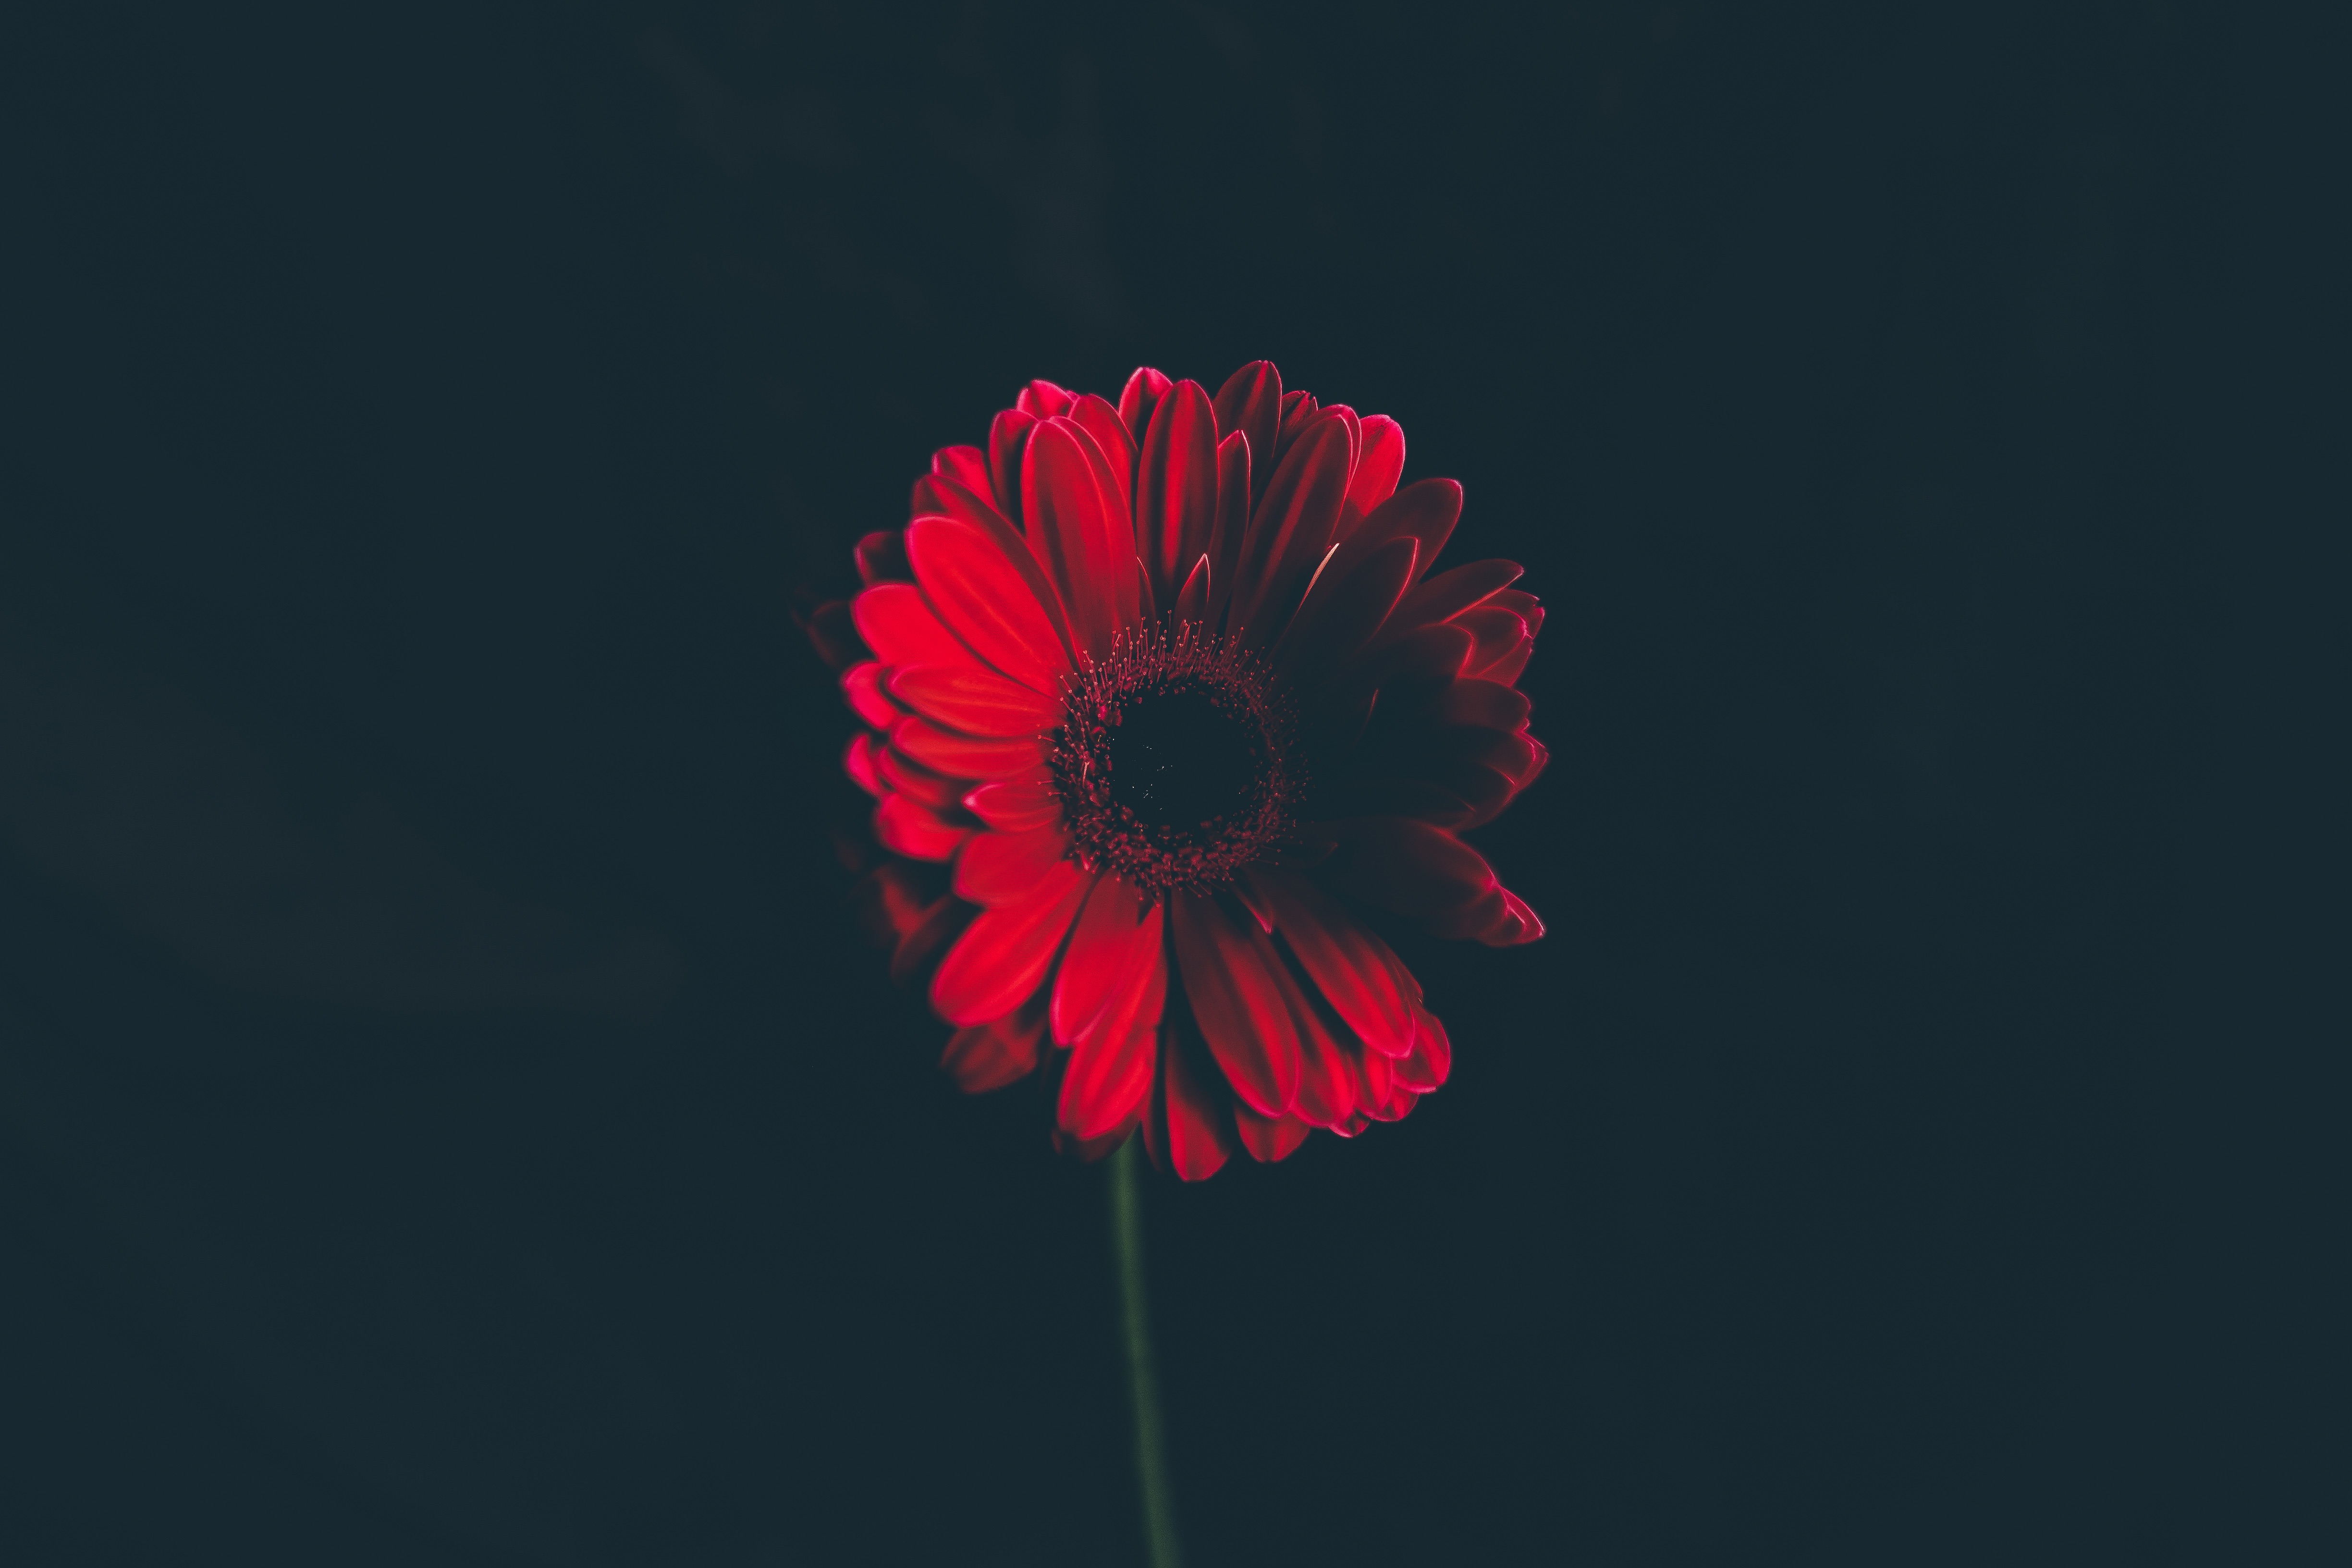 stalk, flower, bud, black background, flowers, red, stem Full HD